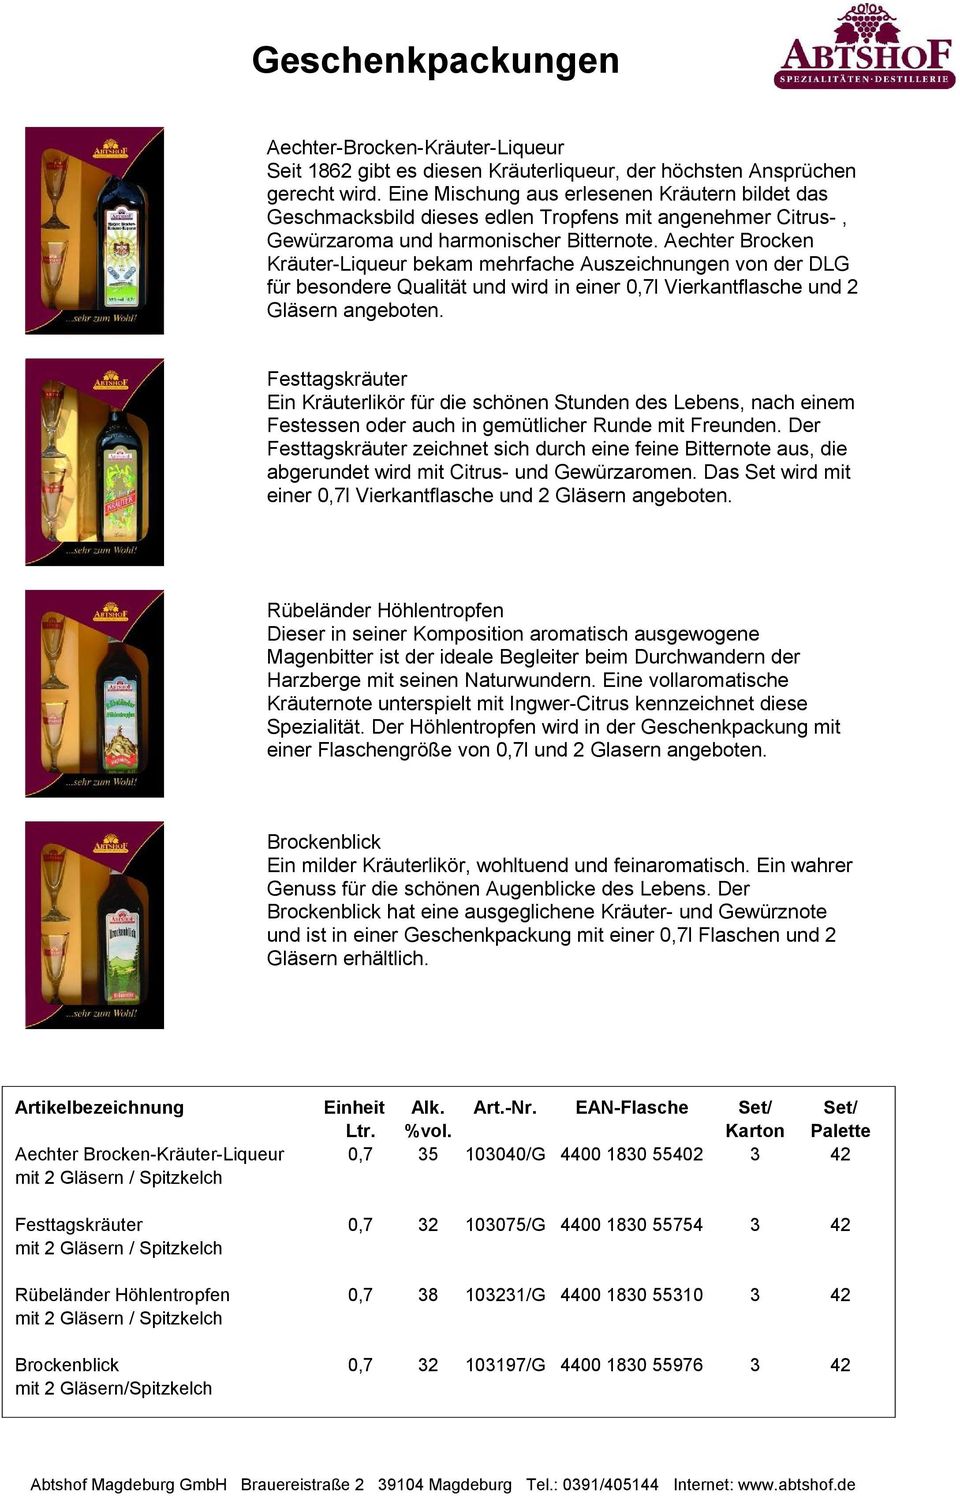 Aechter Brocken Kräuter-Liqueur bekam mehrfache Auszeichnungen von der DLG für besondere Qualität und wird in einer 0,7l Vierkantflasche und 2 Gläsern angeboten.